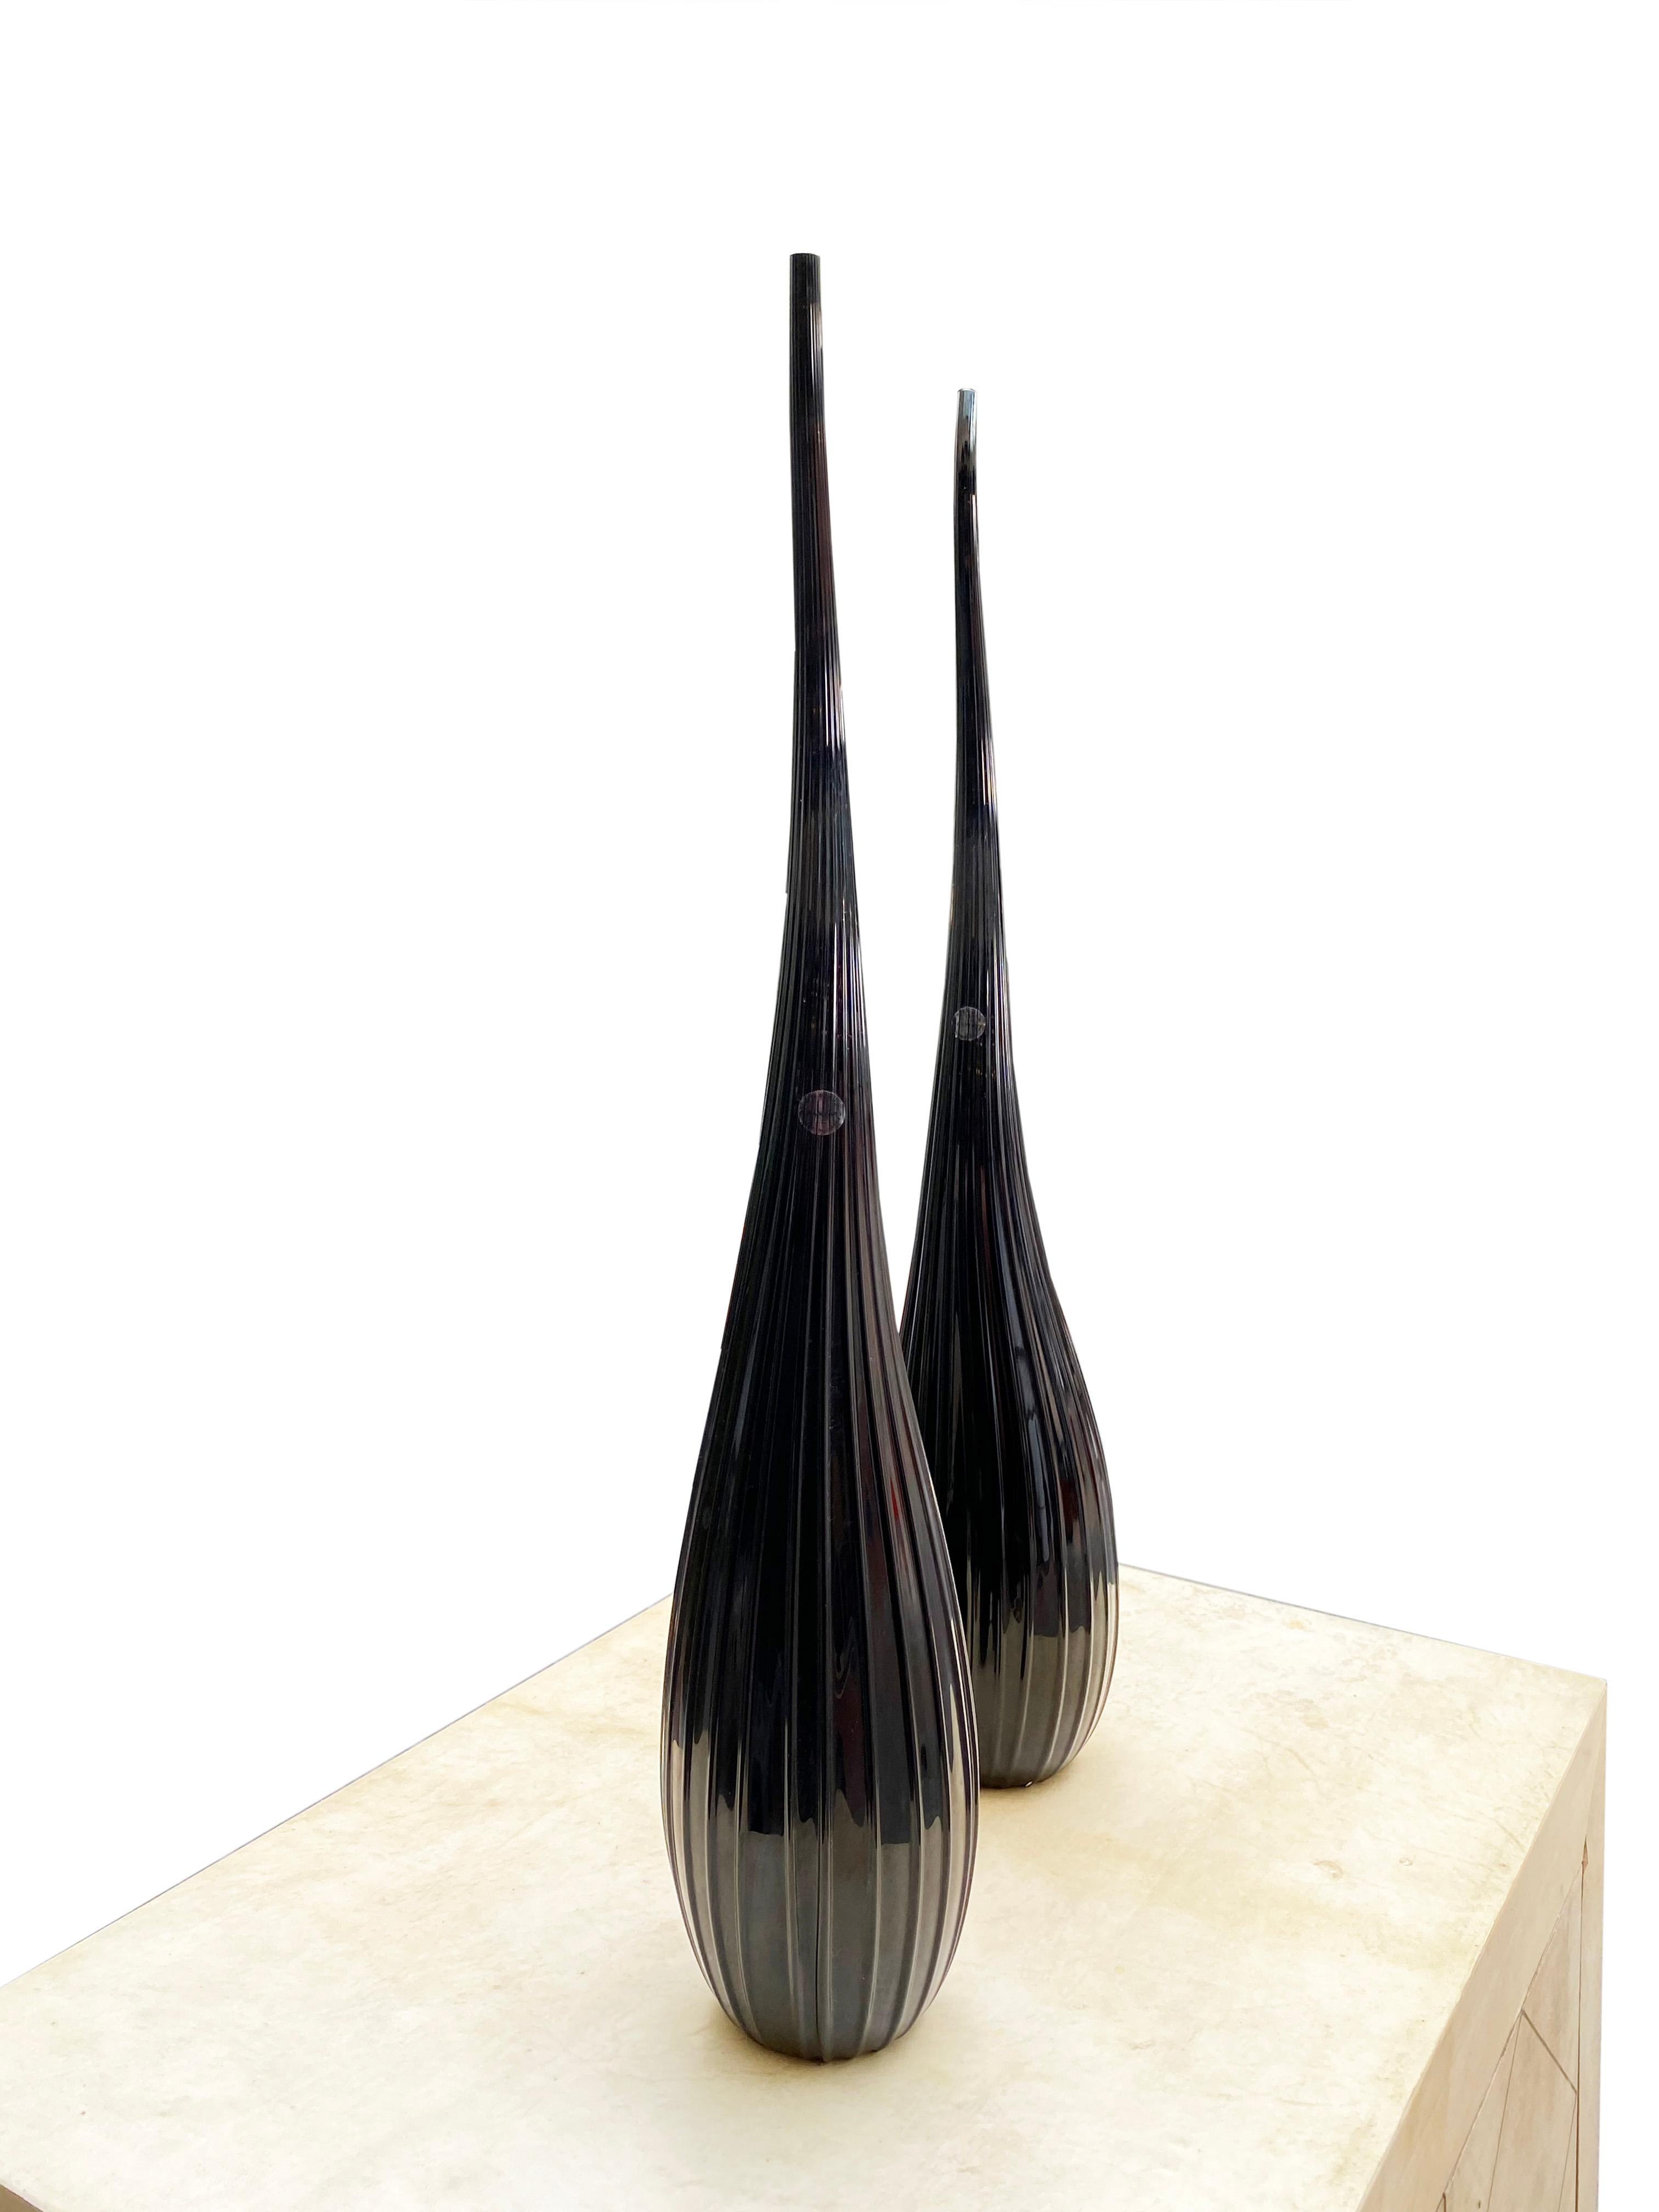 Salviati
Von Renzo Stellon
Modell Aria
2 Vasen Soliflores Modell Aria
Aus schwarzem Muranoglas
Piriform mit einem langen, gewundenen Hals, der mit feinen Rippen verziert ist
55 cm hoch
Unterzeichnet und datiert 2009
Vorrätige Artikel
890